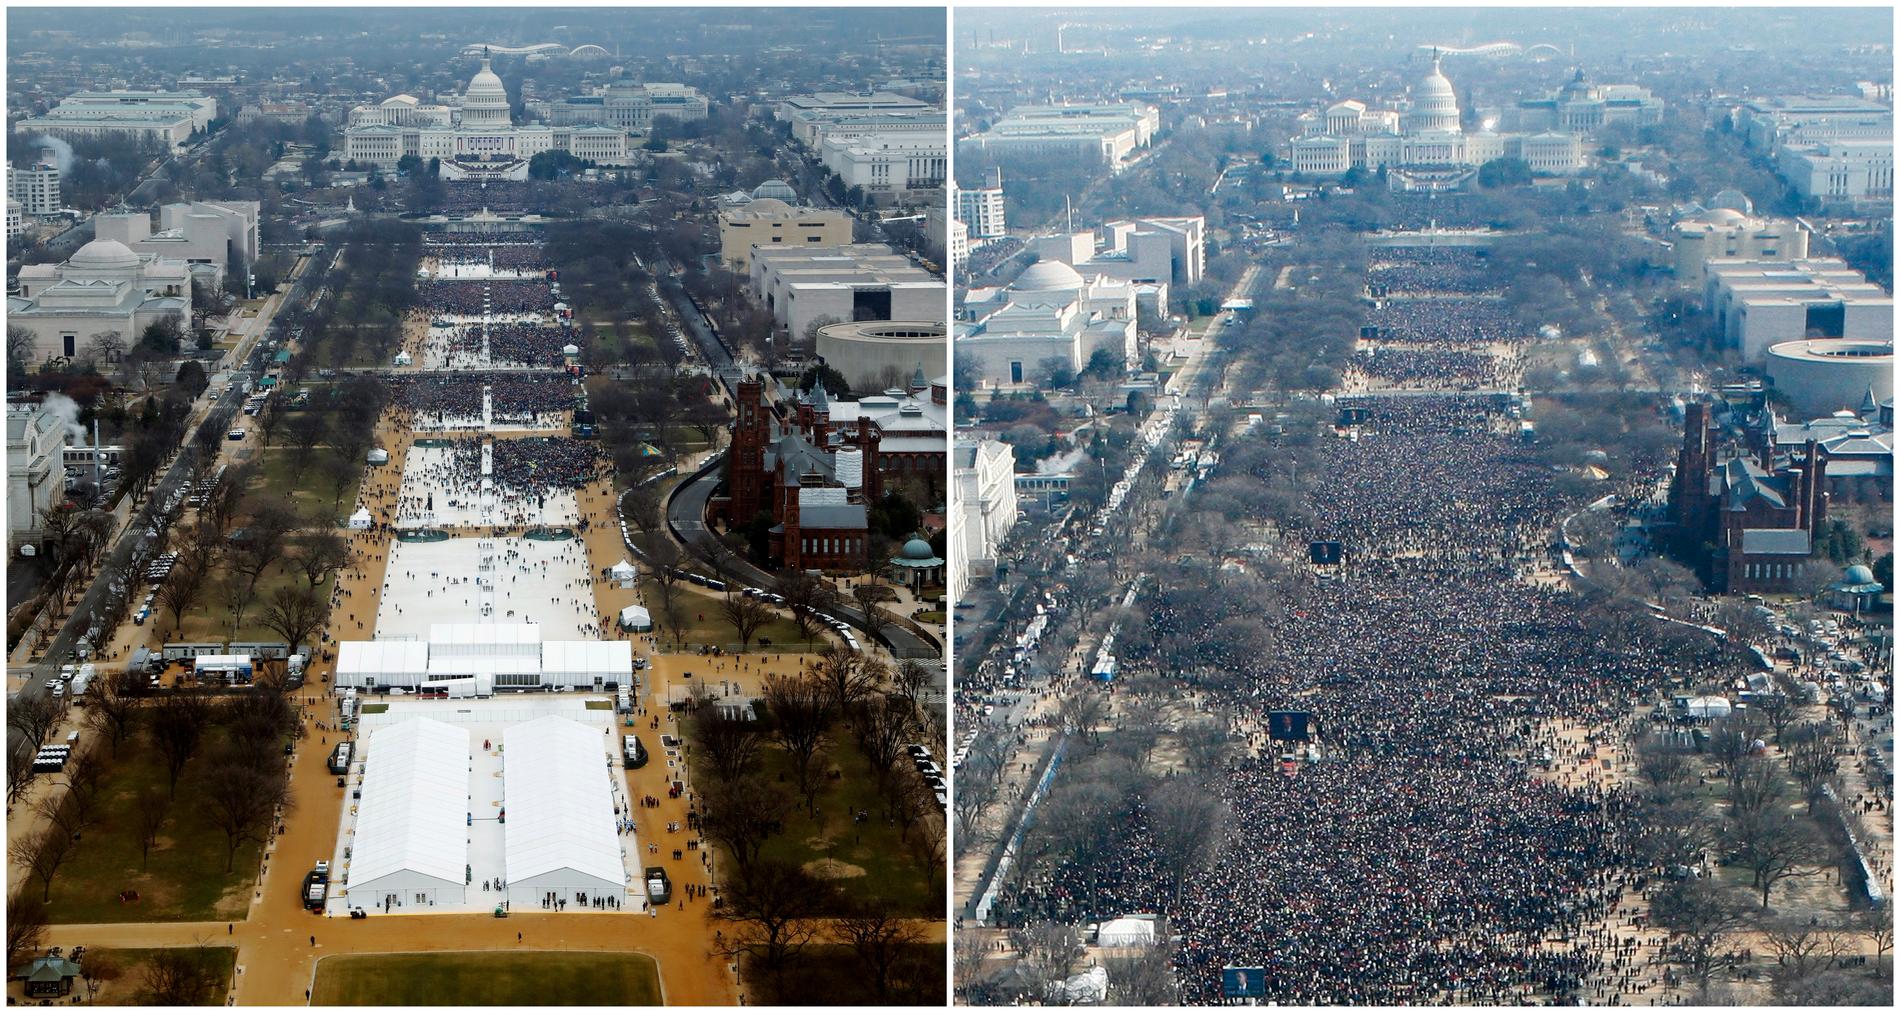 Publiken under Trumps installation till vänster, till höger publiken under Obamas installation 2009.